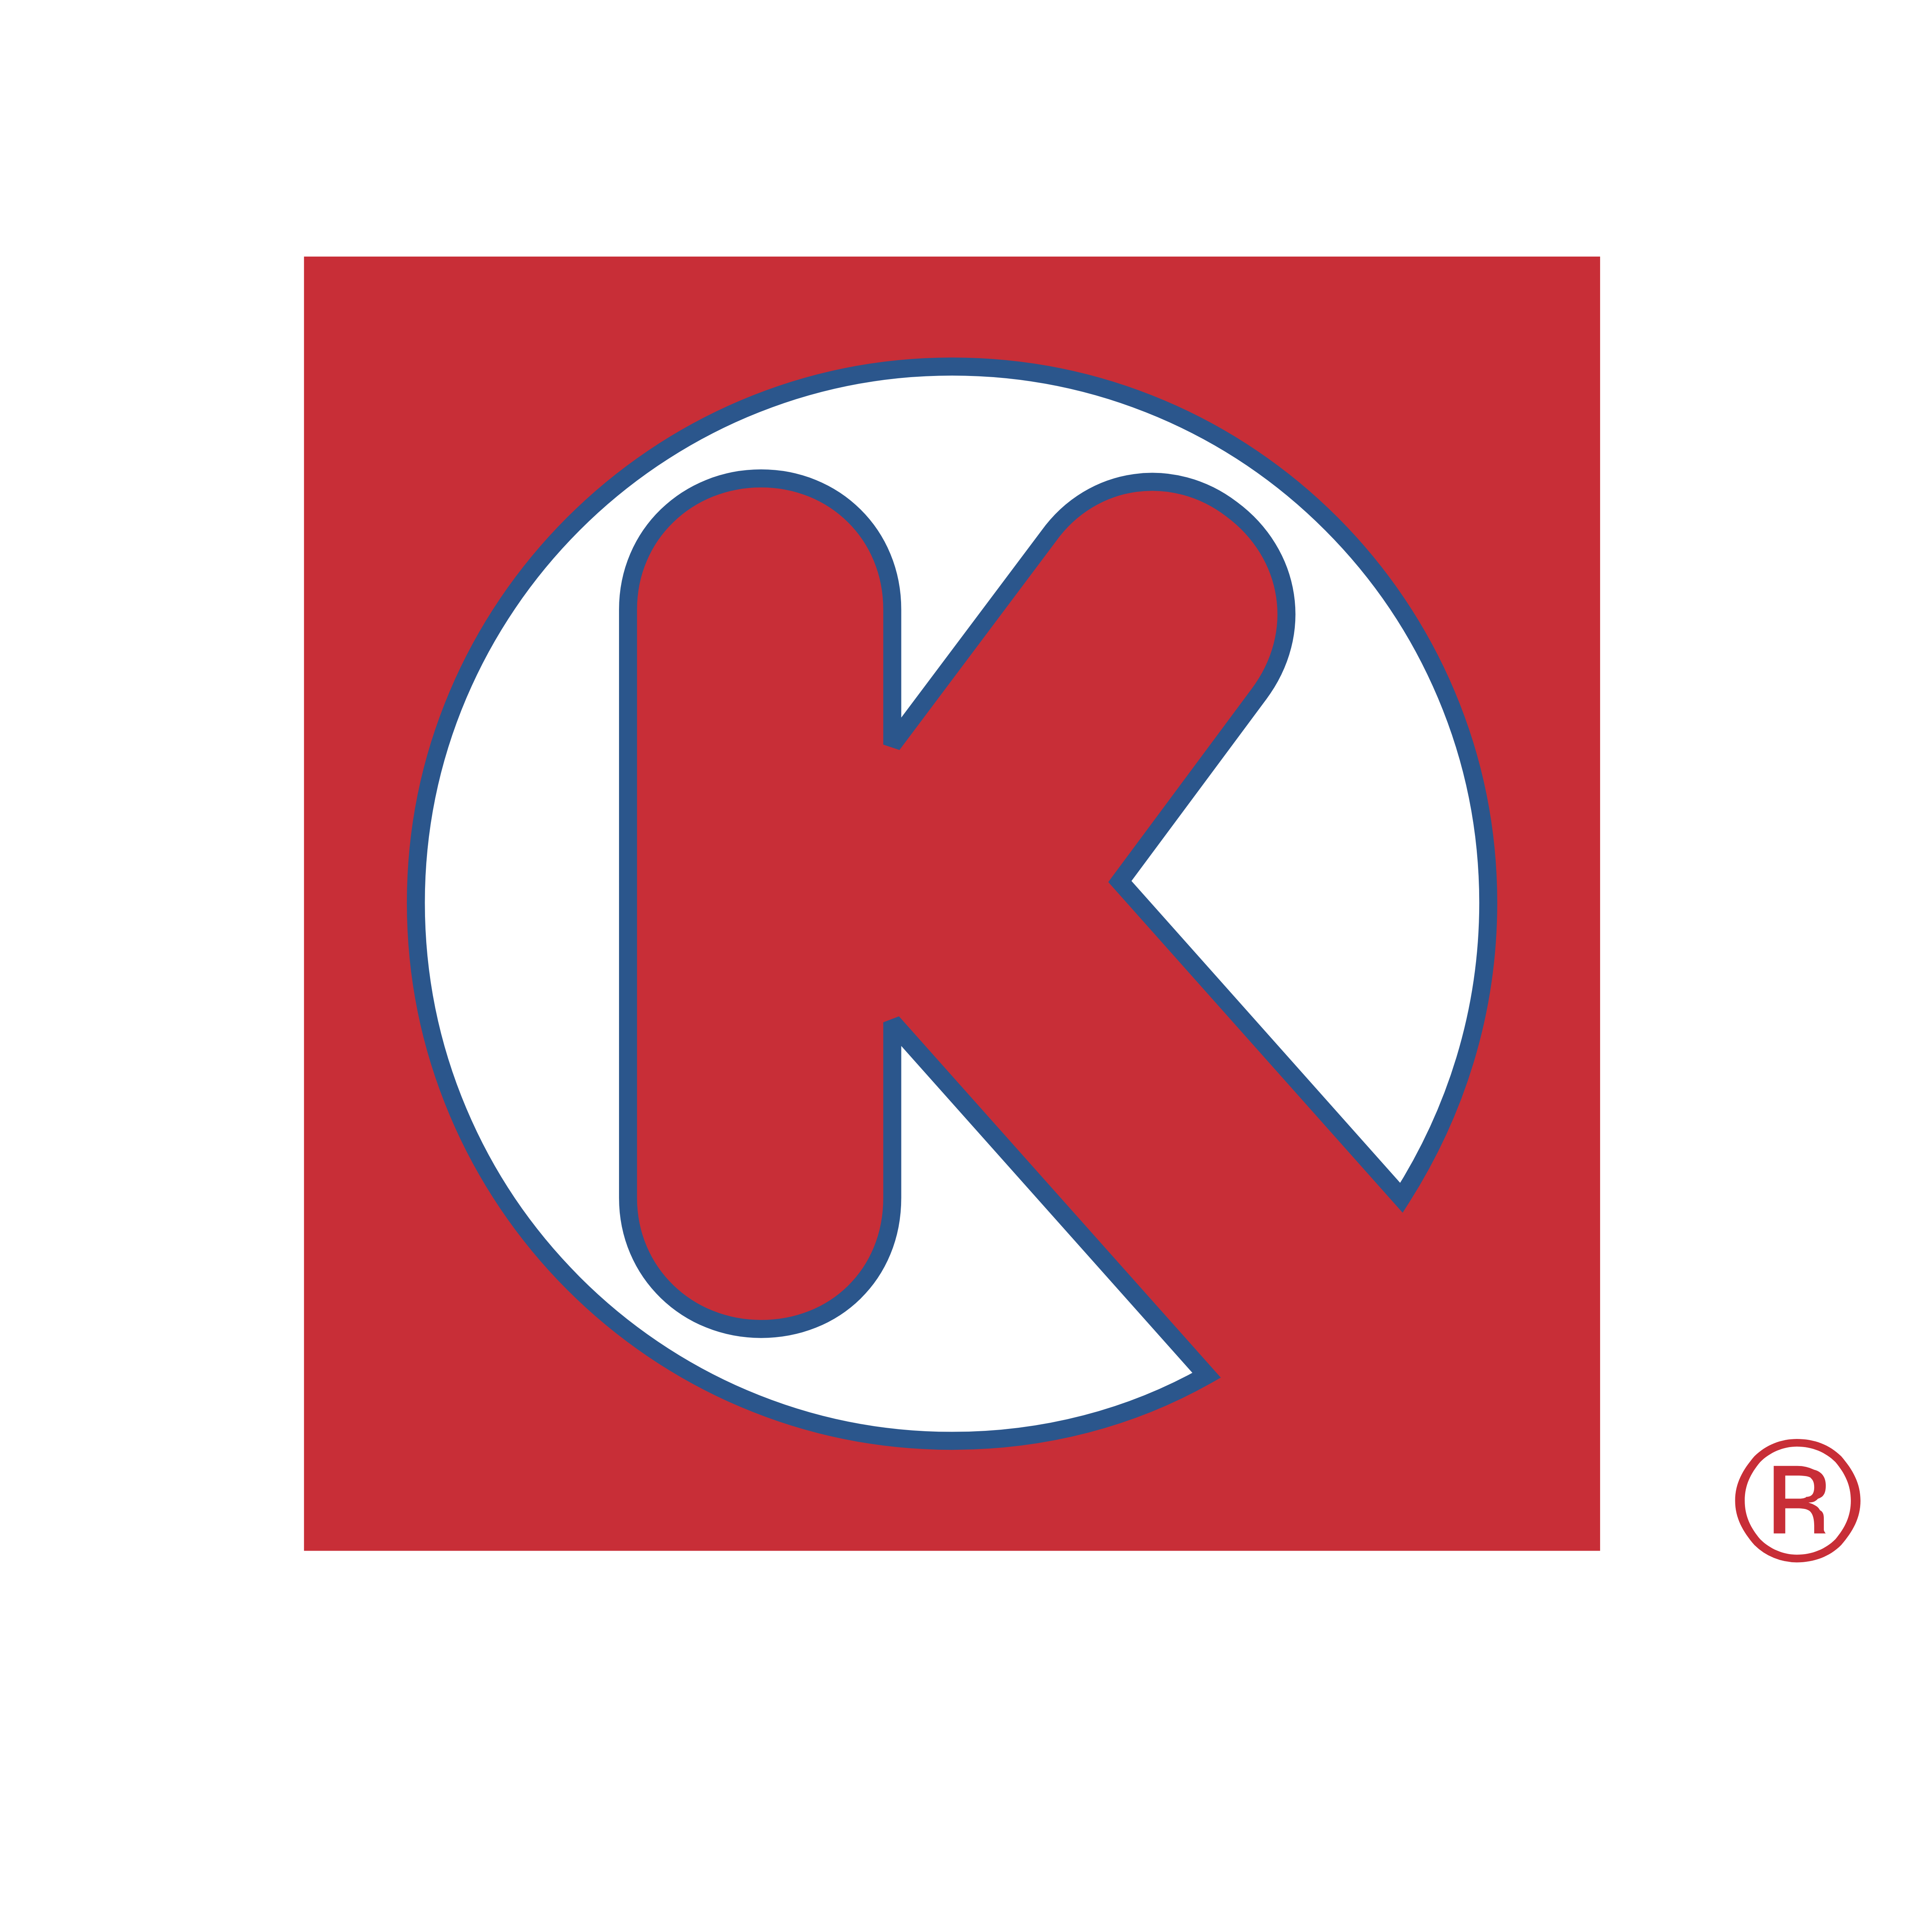 Red K Logo - Circle K – Logos Download